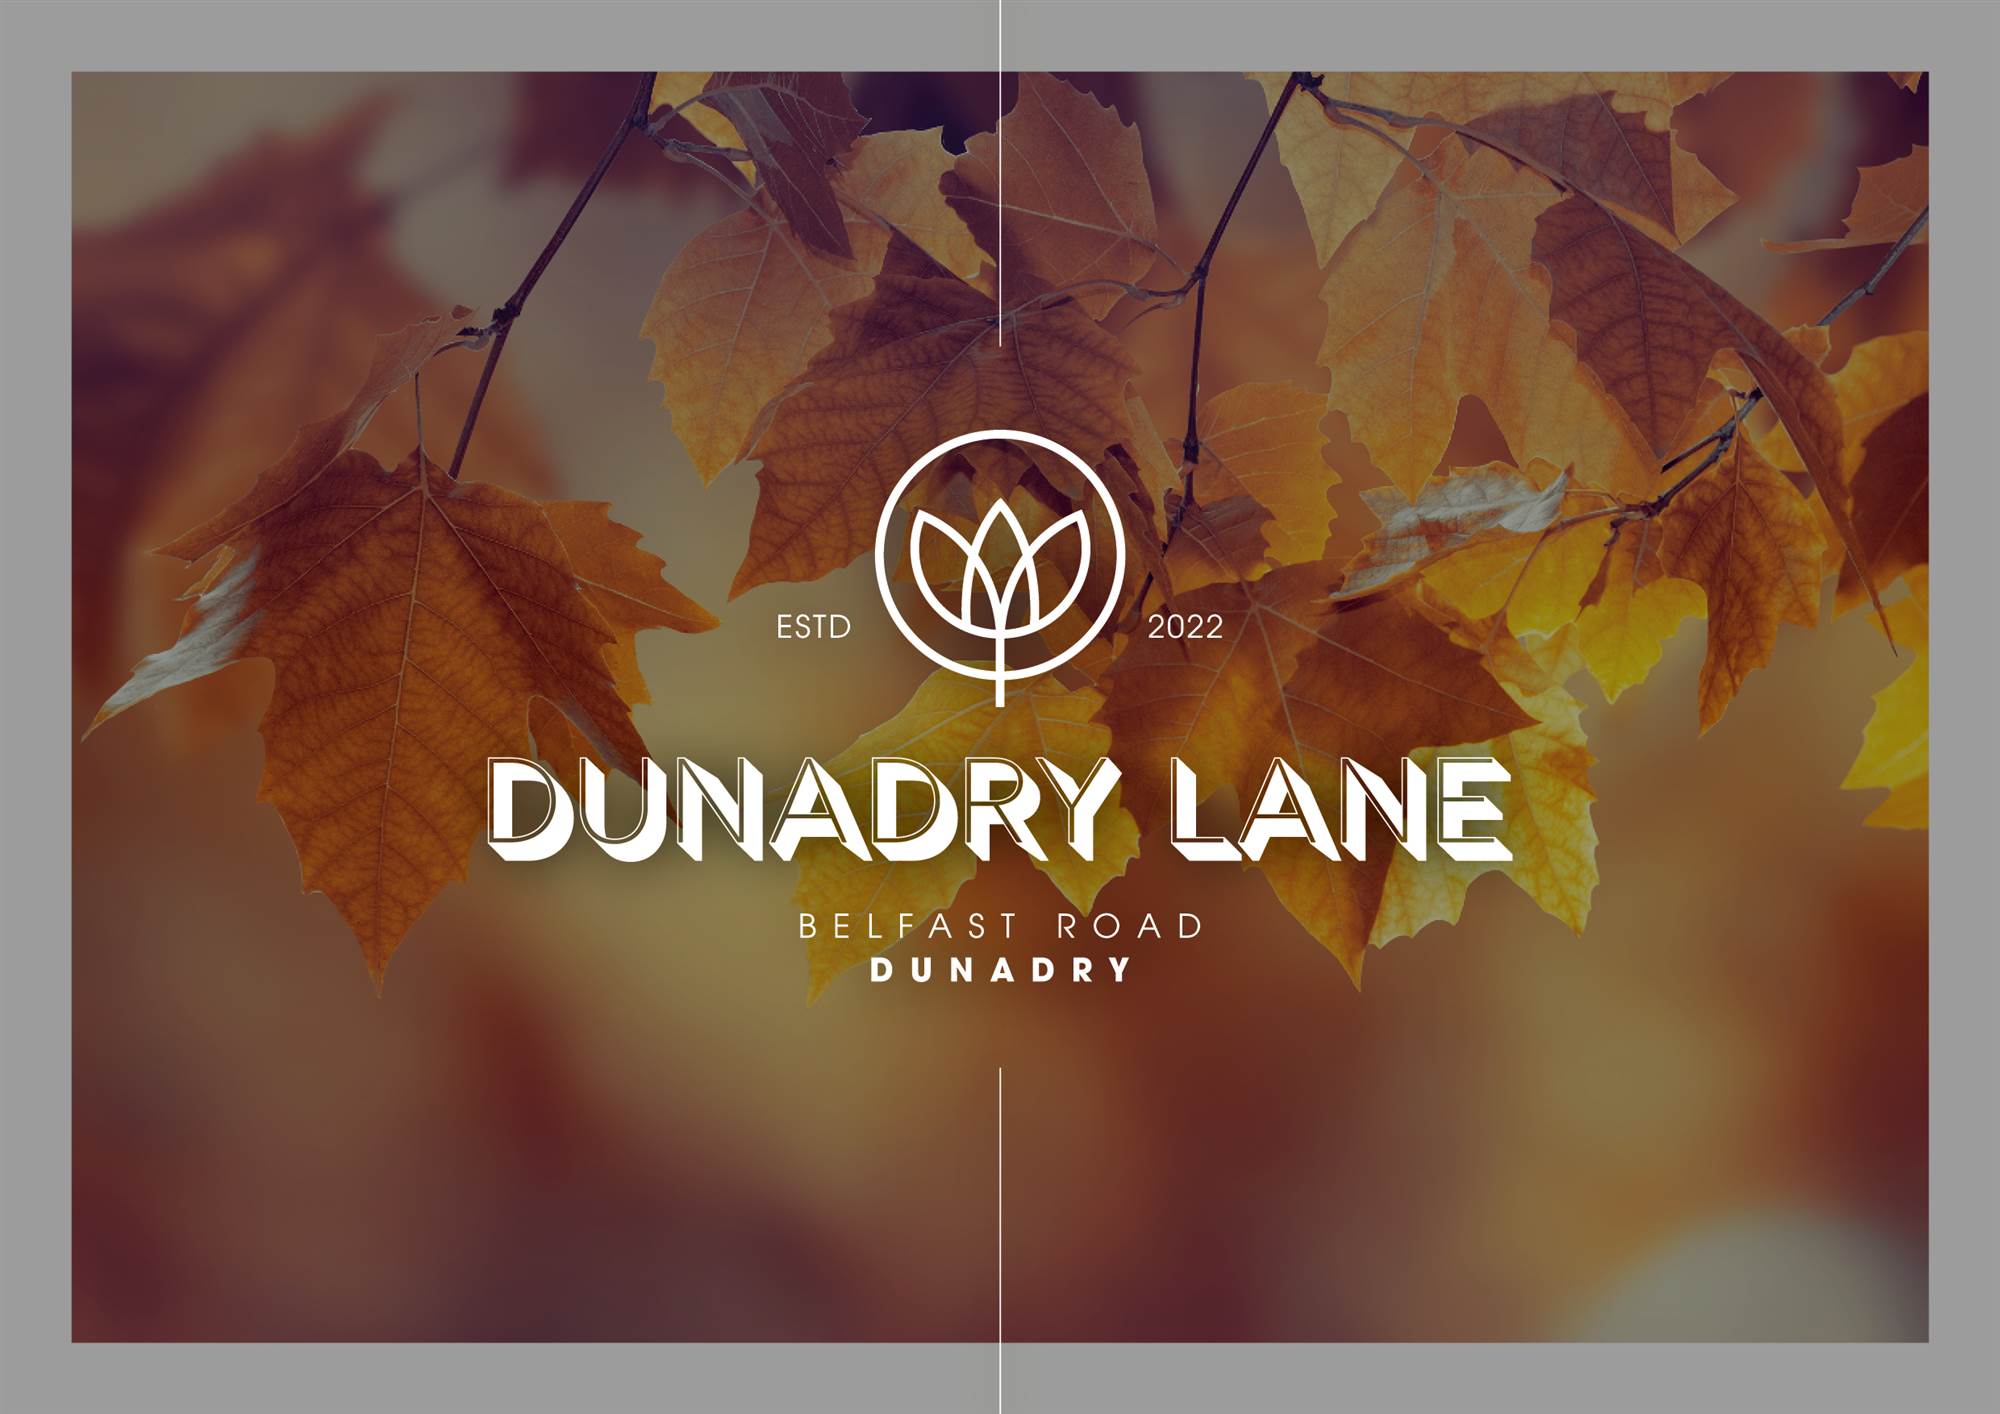 Dunadry Lane